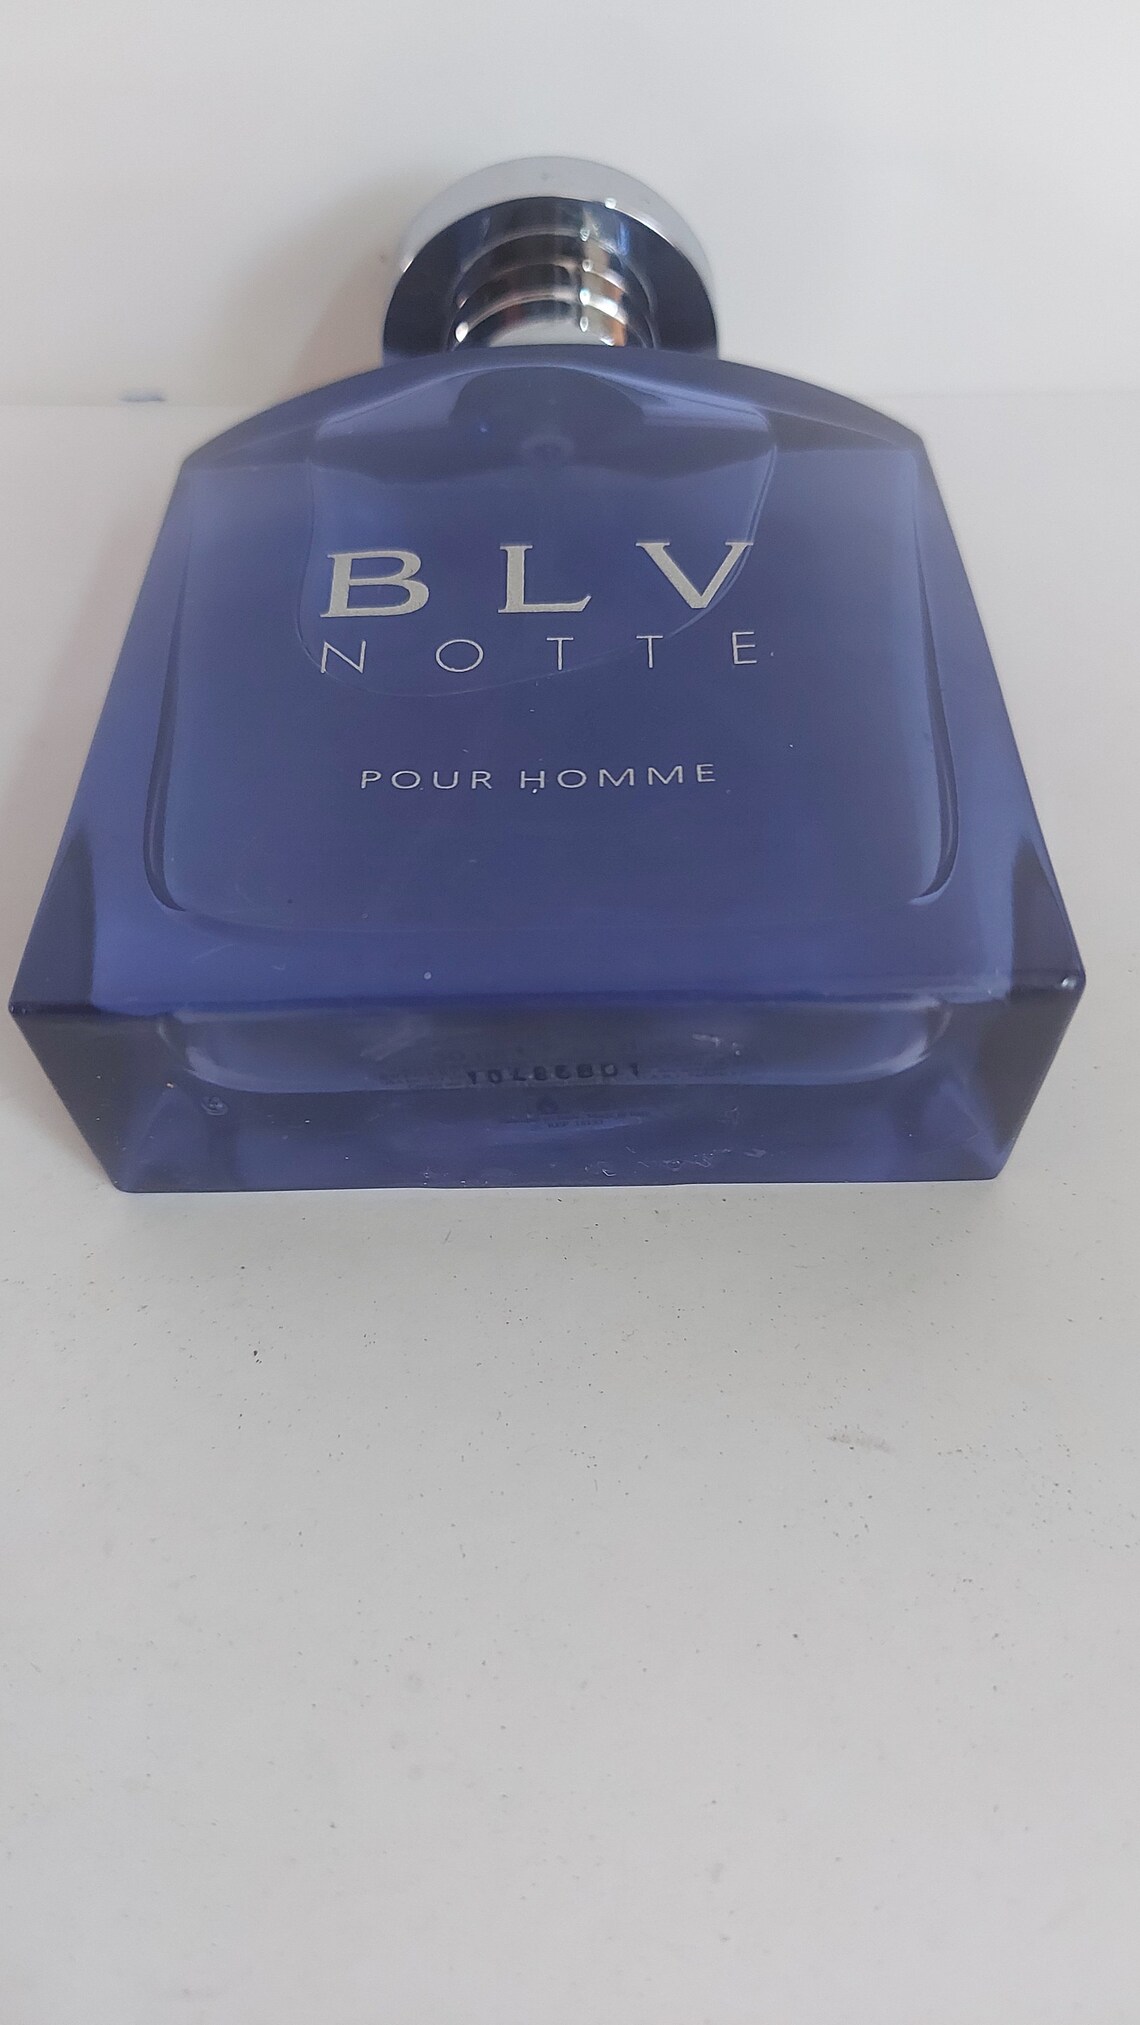 BLV Notte Pour Homme by Bvlgari Eau De Toilette 50ml/1.7 Fl.oz - Etsy